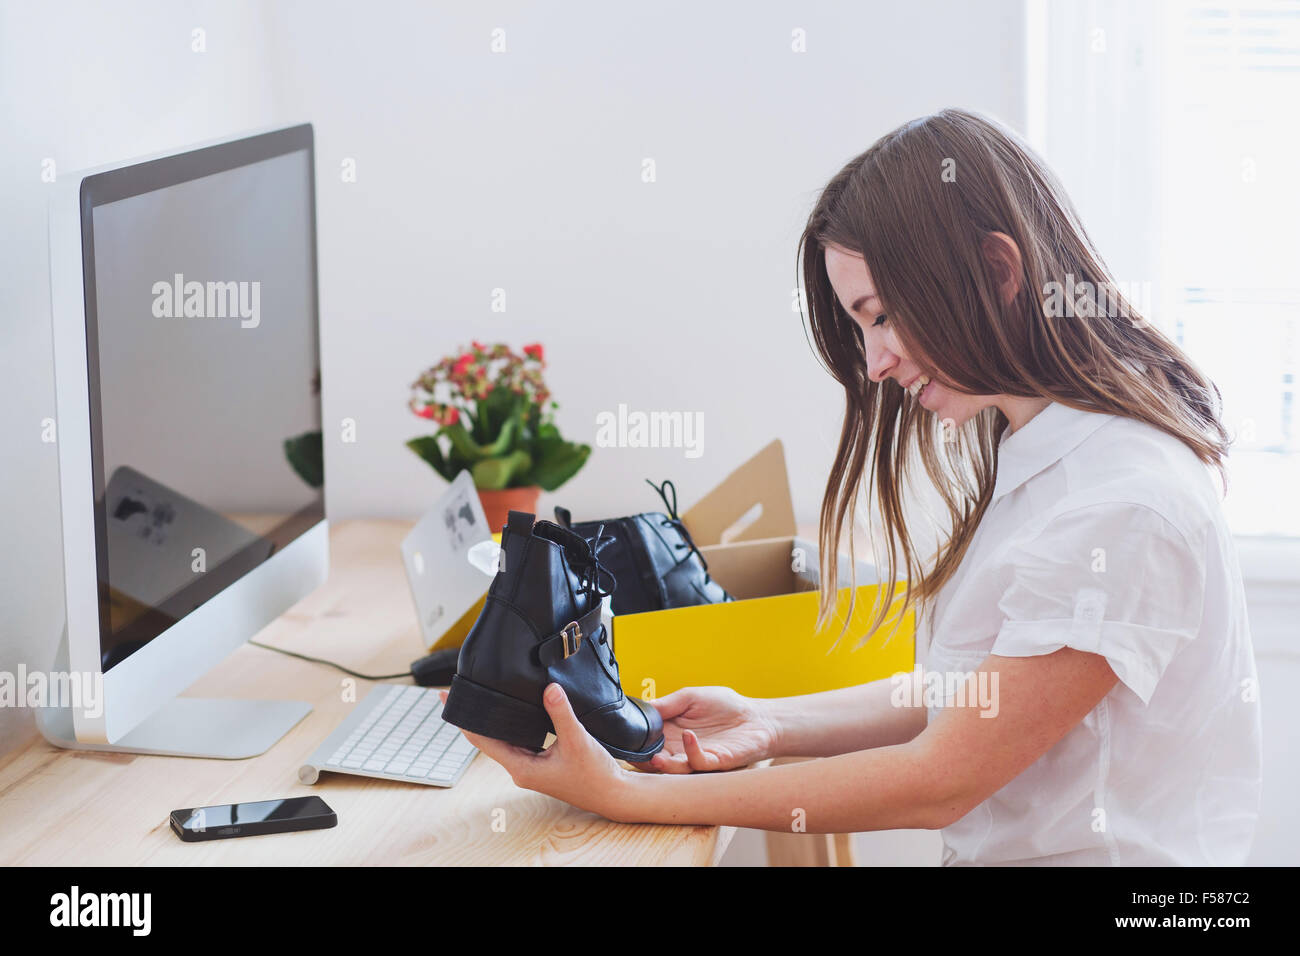 Einkaufen online-Konzept, öffnet glückliche Frau Box mit neuen Schuhen, bestellt per internet Stockfoto